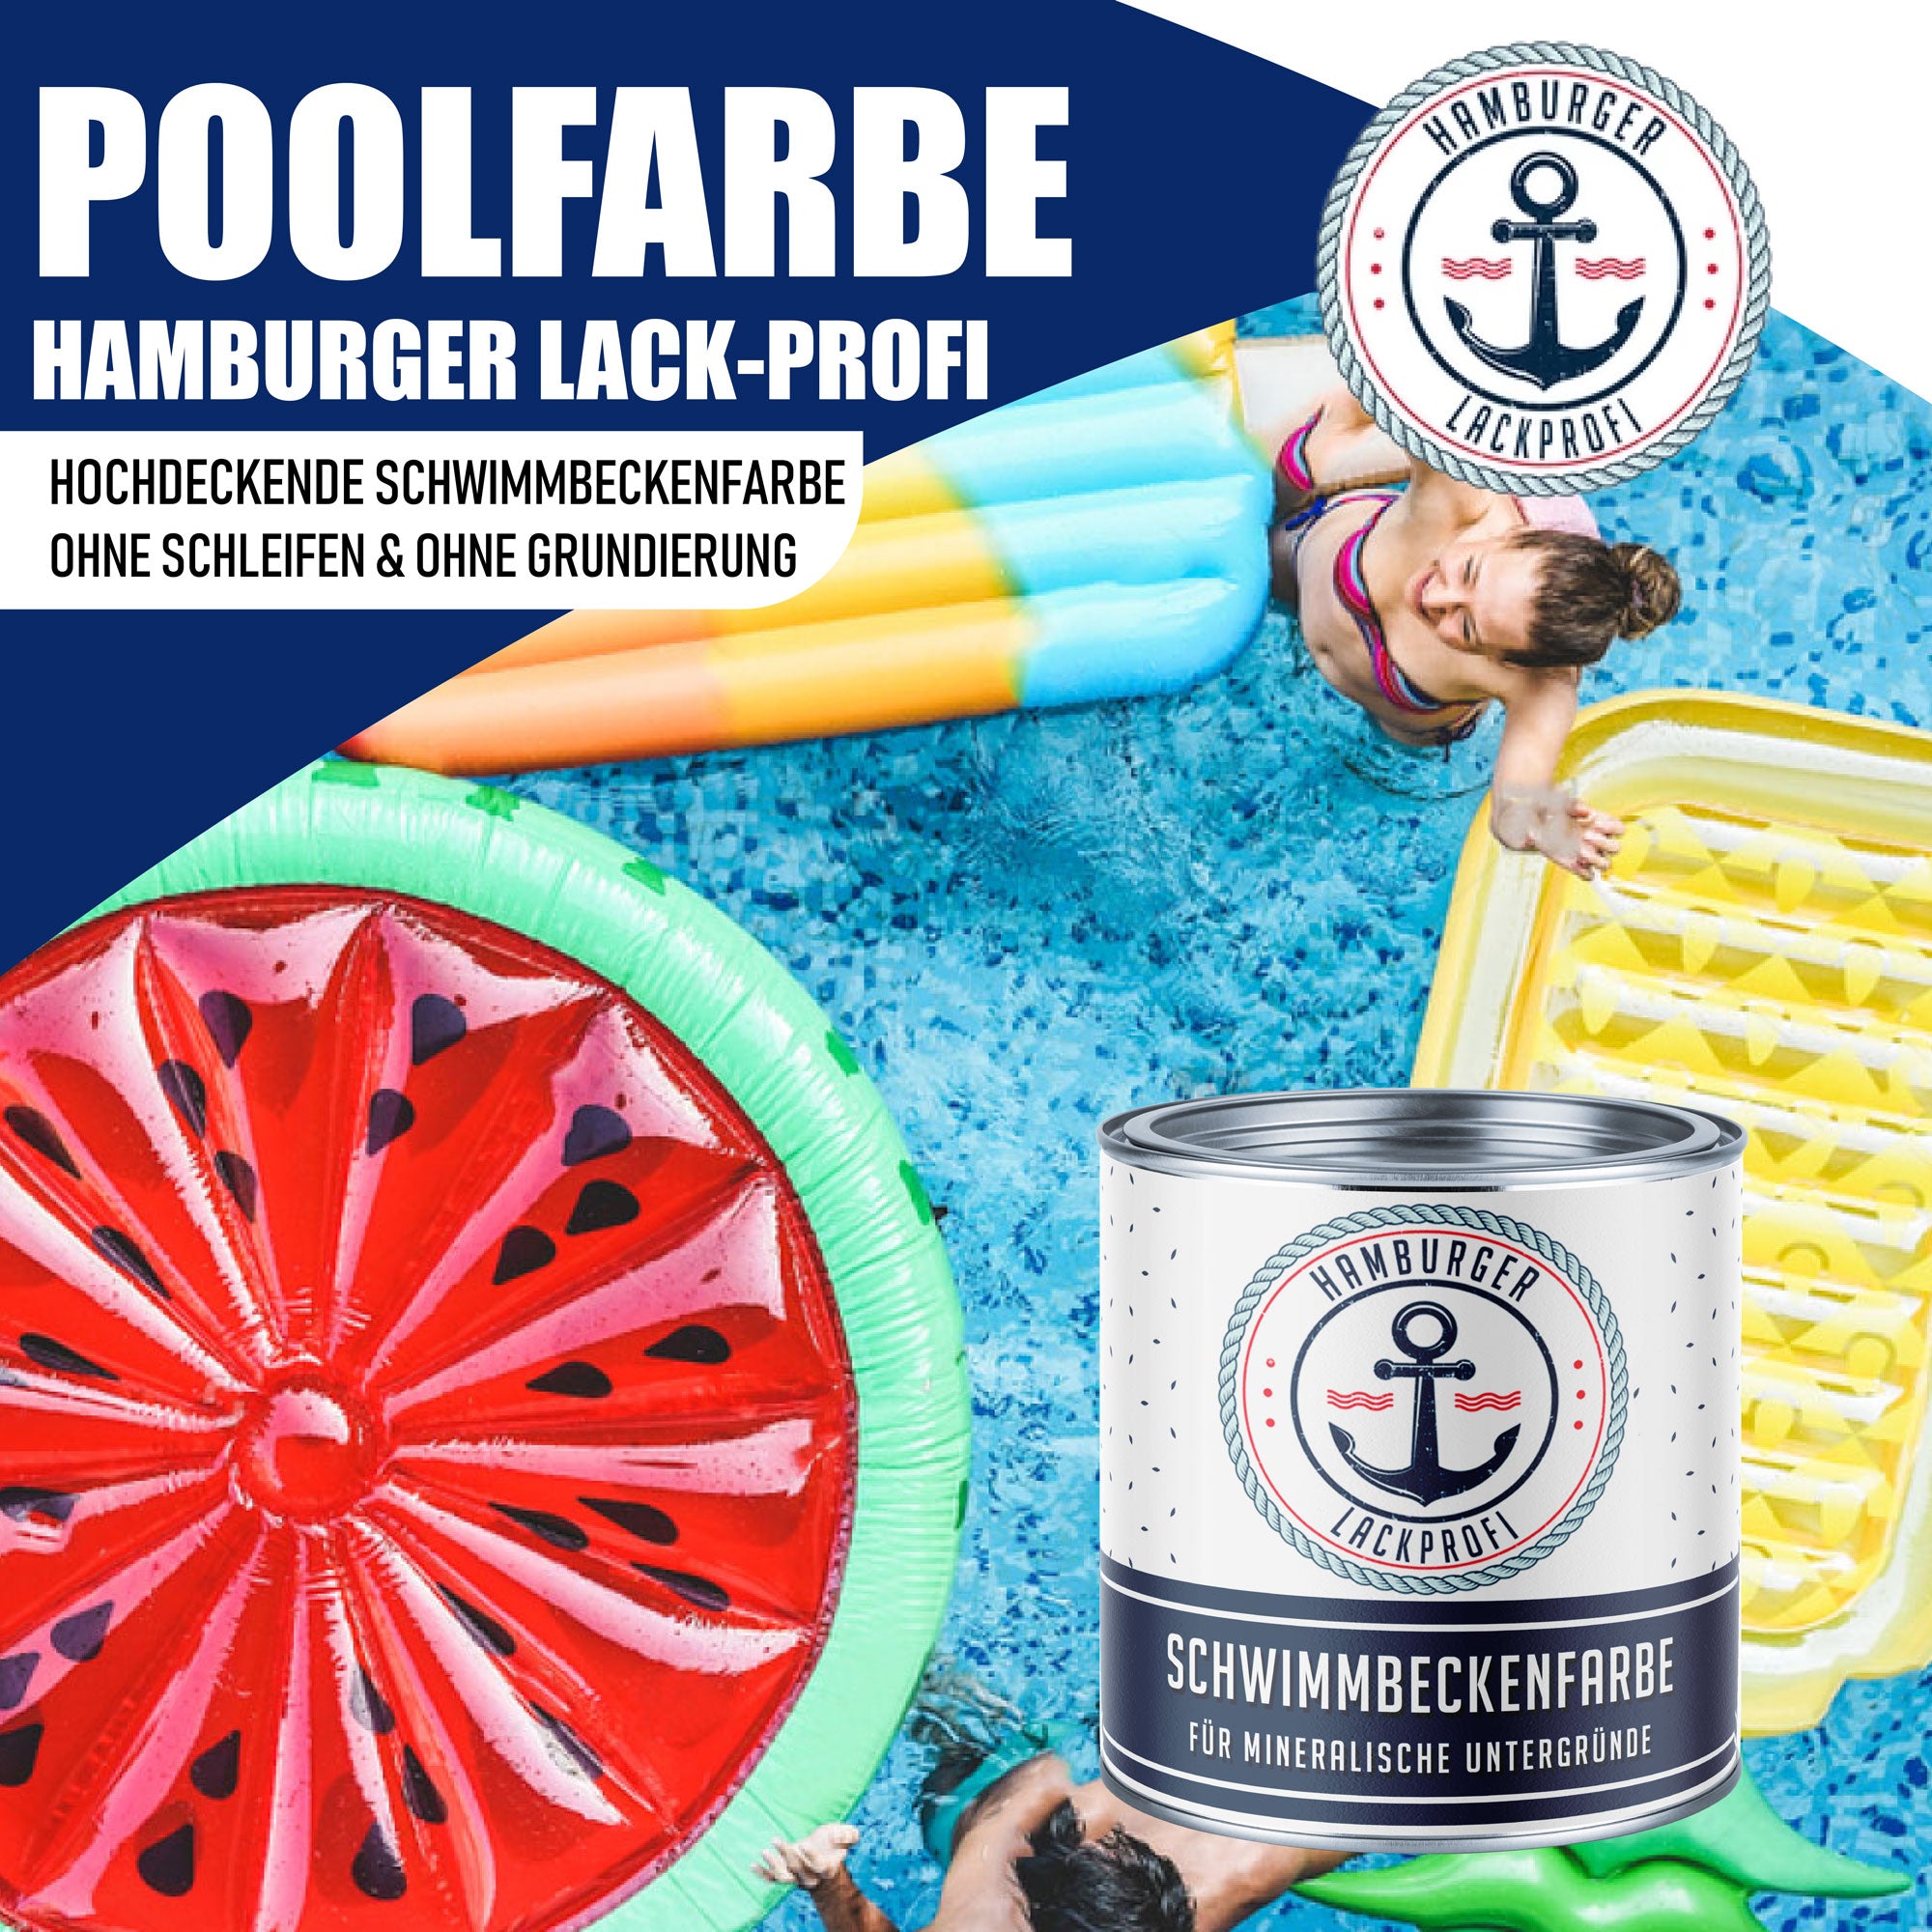 Hamburger Lack-Profi Schwimmbeckenfarbe Graublau RAL 5008 - hochdeckende Poolfarbe